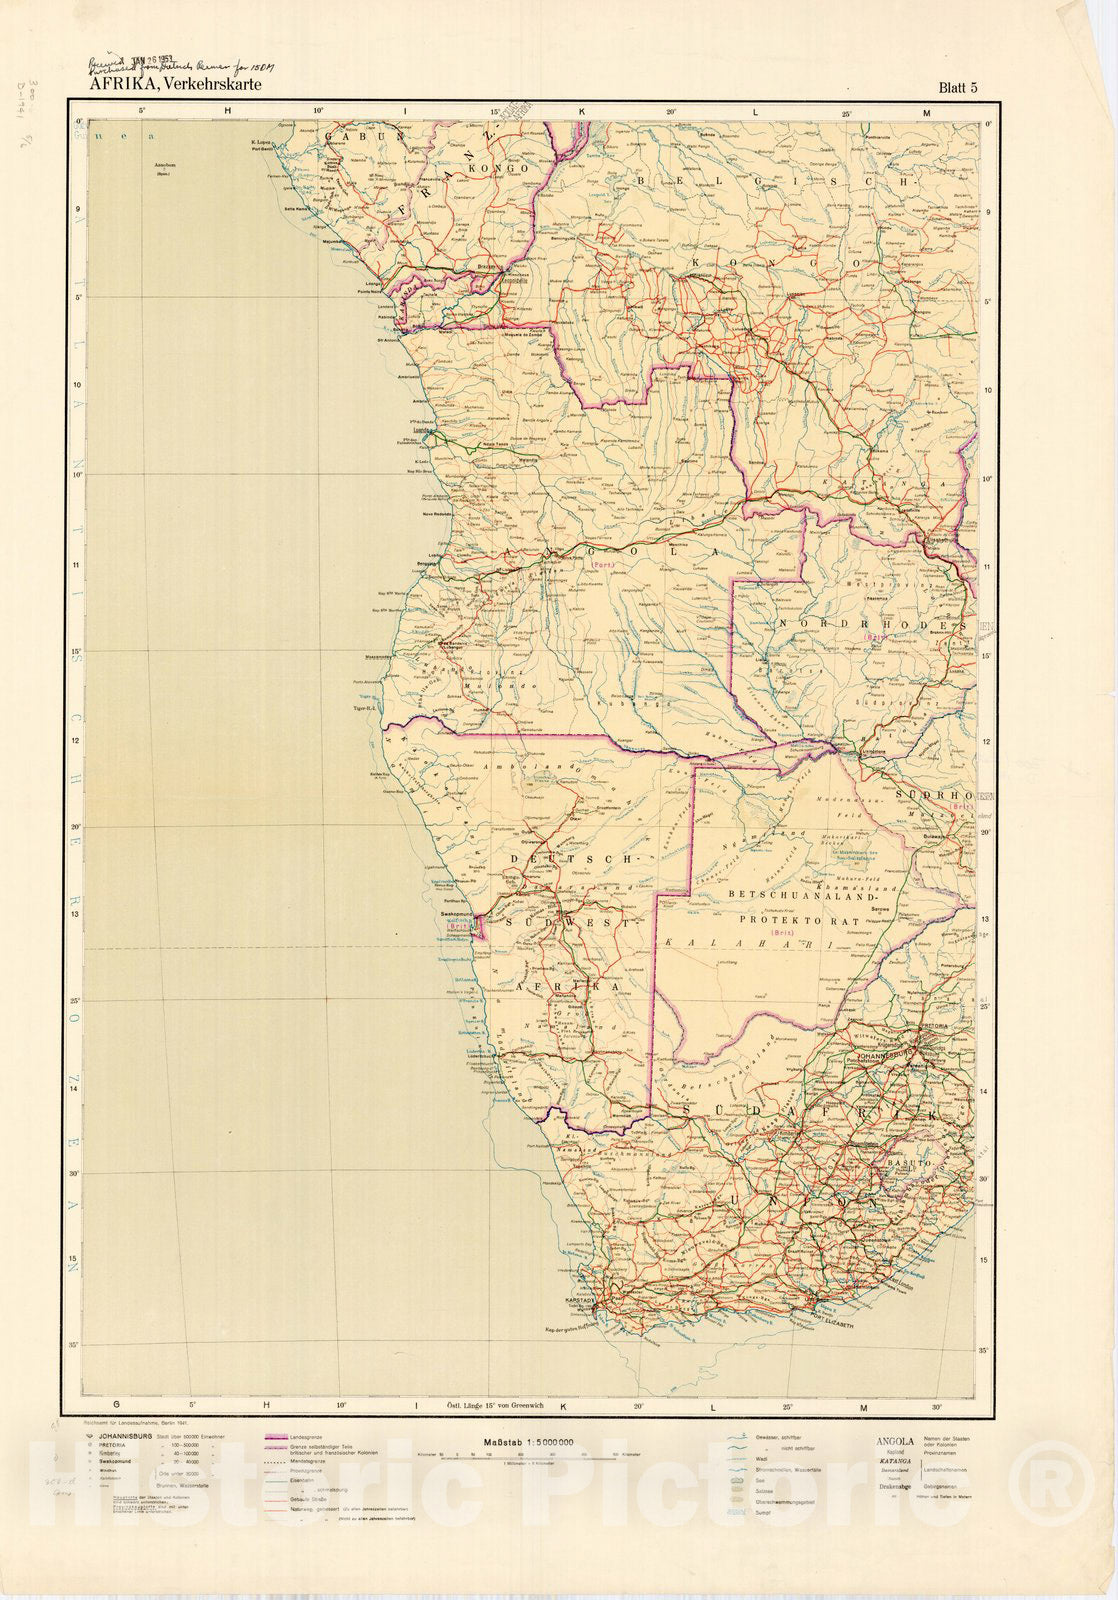 Map : Africa 1941 2, Afrika, Verkehrskarte , Antique Vintage Reproduction